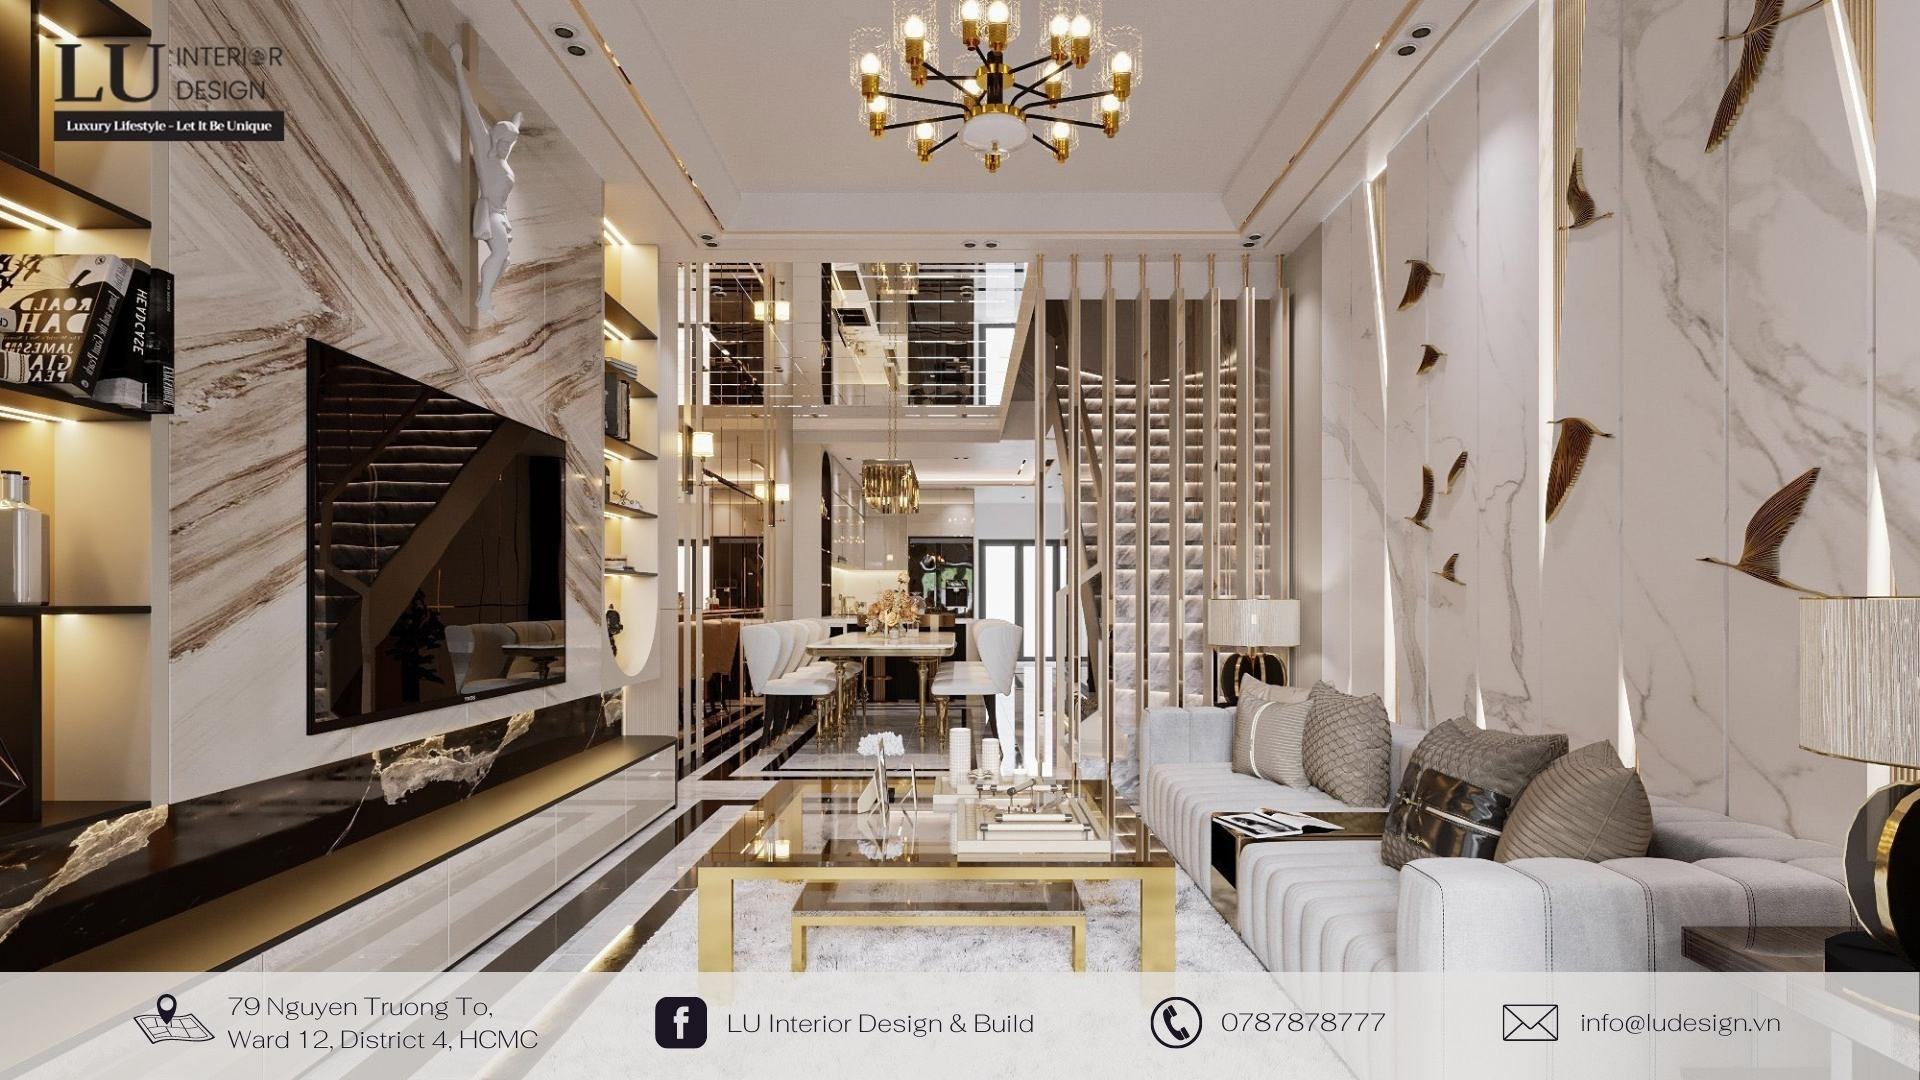 Thiết kế nội thất nhà hợp phong thủy cho người mệnh Kim với màu trắng, vàng, xám | Dự án nhà phố Tân Phú - LU Design thực hiện.